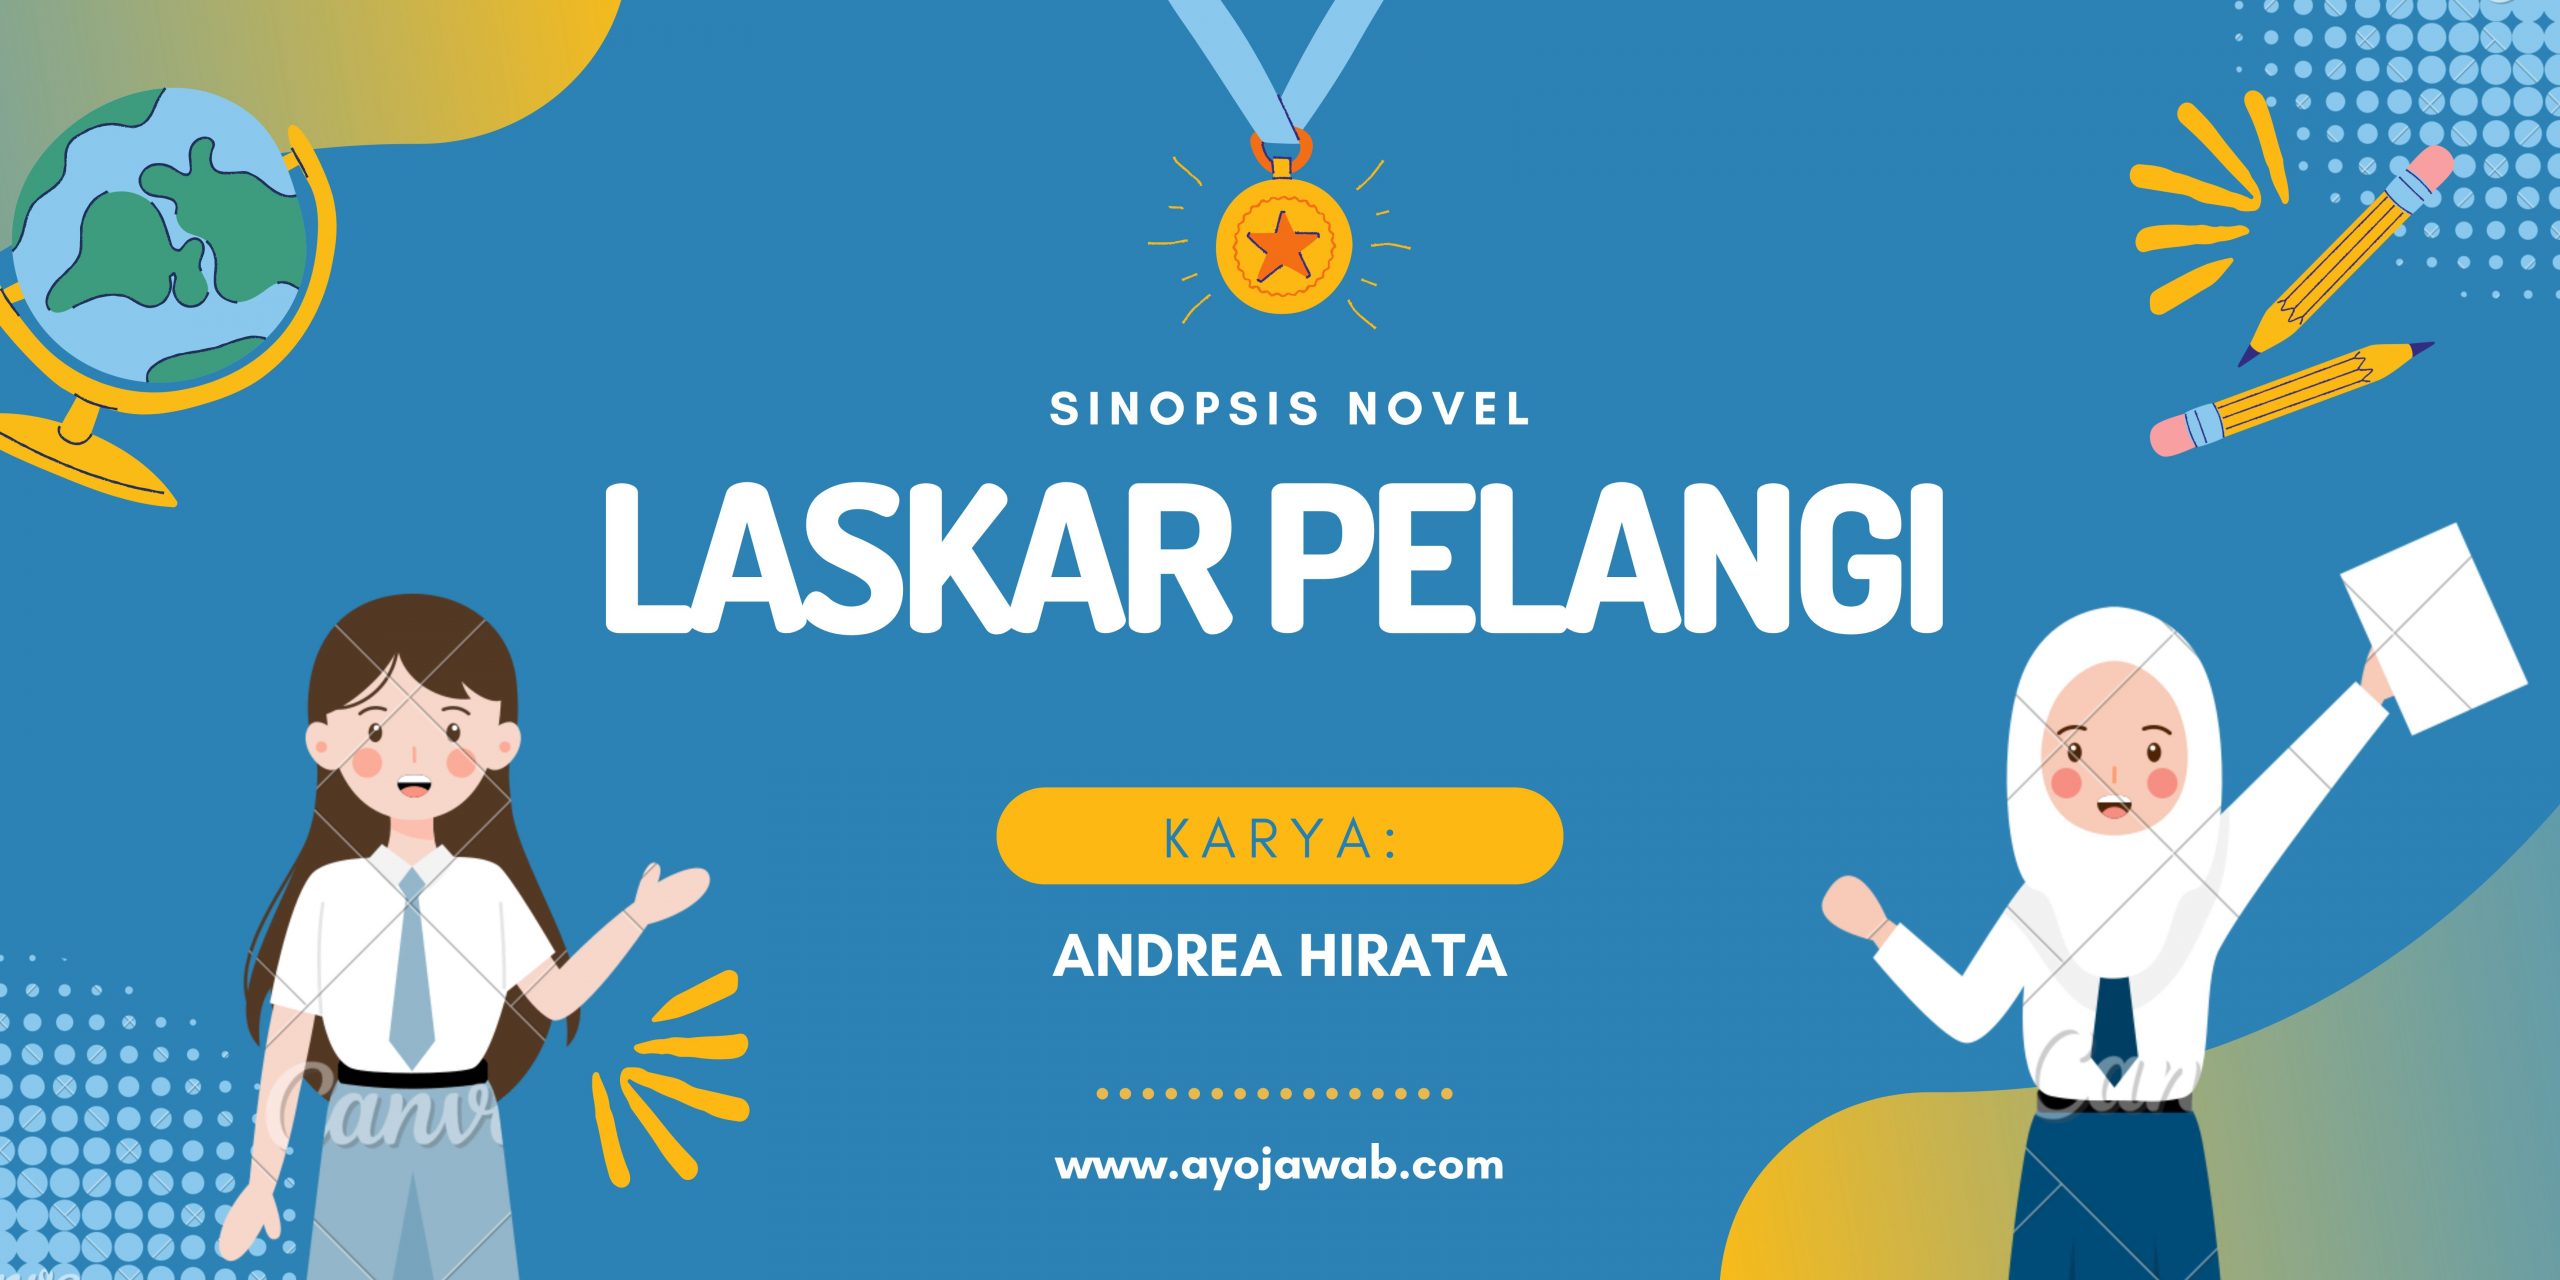 Sinopsis Novel Laskar Pelangi Singkat dan Jelas